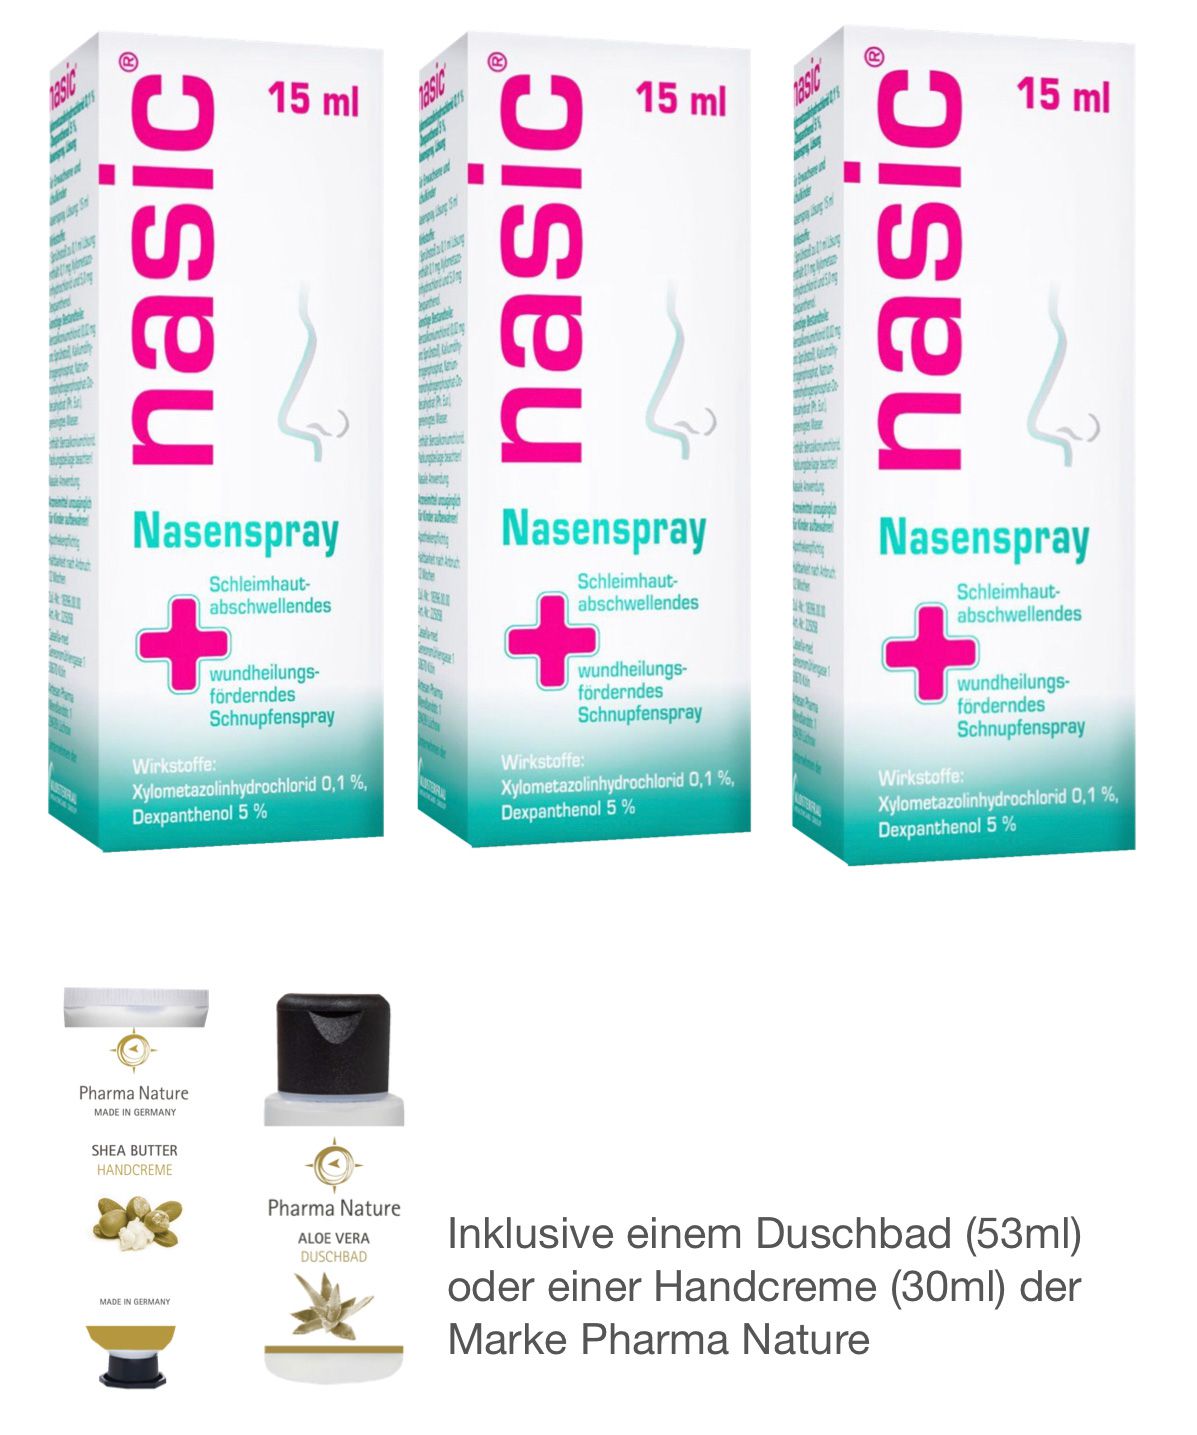 Nasic Nasenspray 3 x 15 ml Sparset inklusive Handcreme oder Duschbad von Pharma Nature